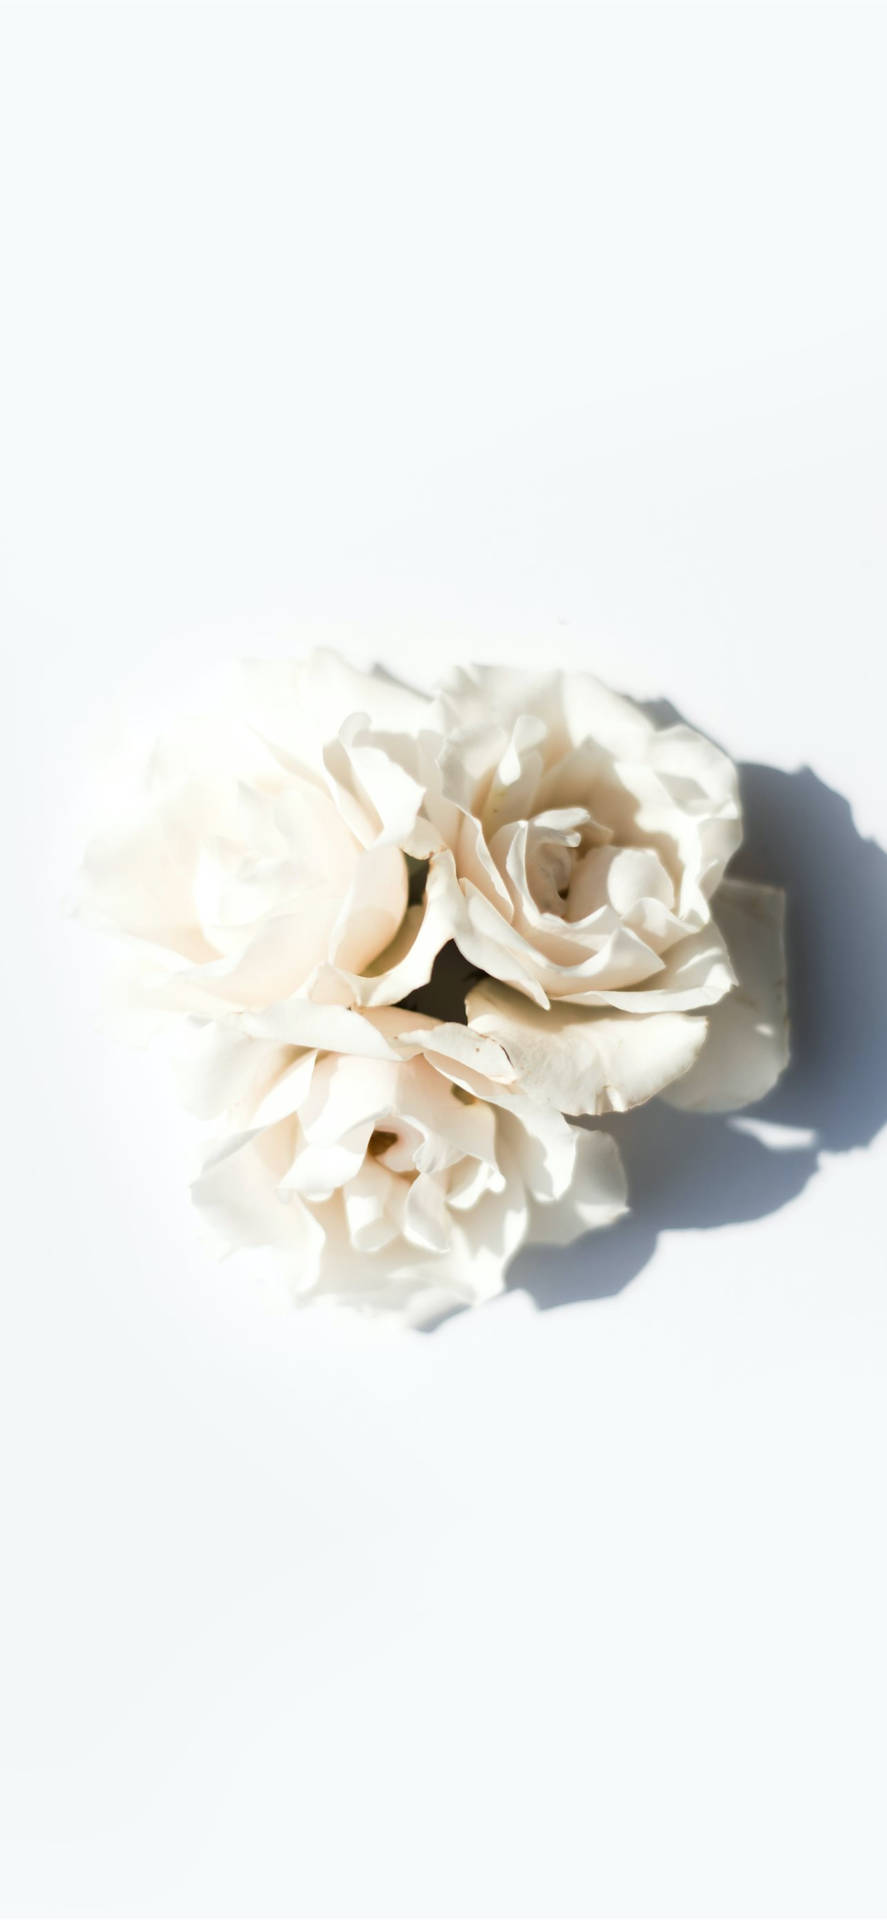 Vienemostrato Un Fiore Bianco Su Una Superficie Bianca Sfondo